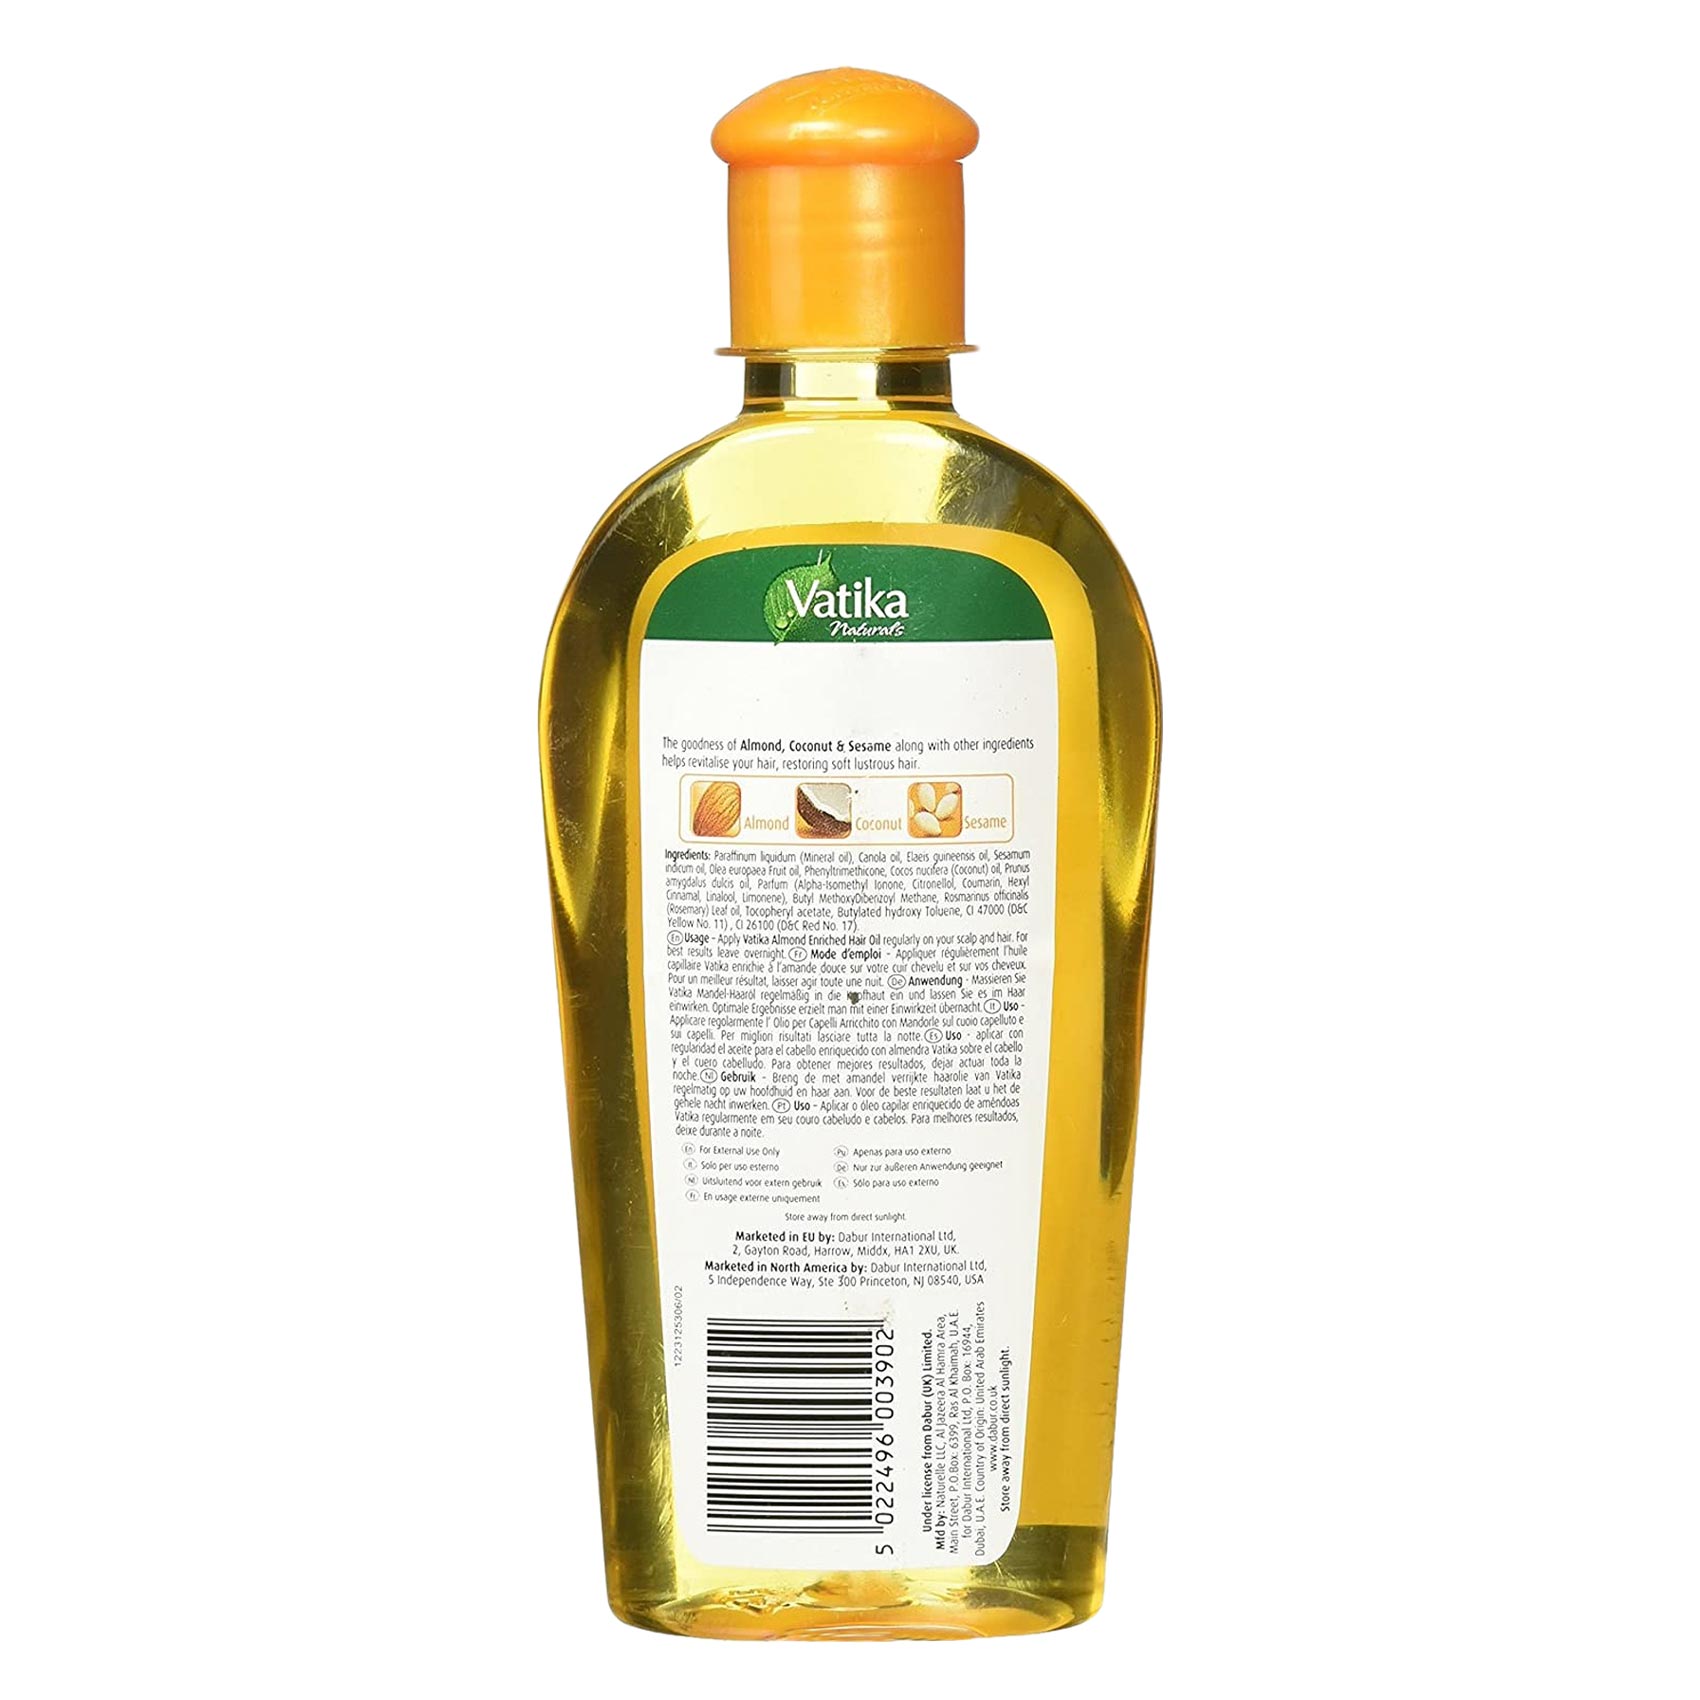 Dabur Vatika Naturals Almond Enriched Hair Oil 200ML